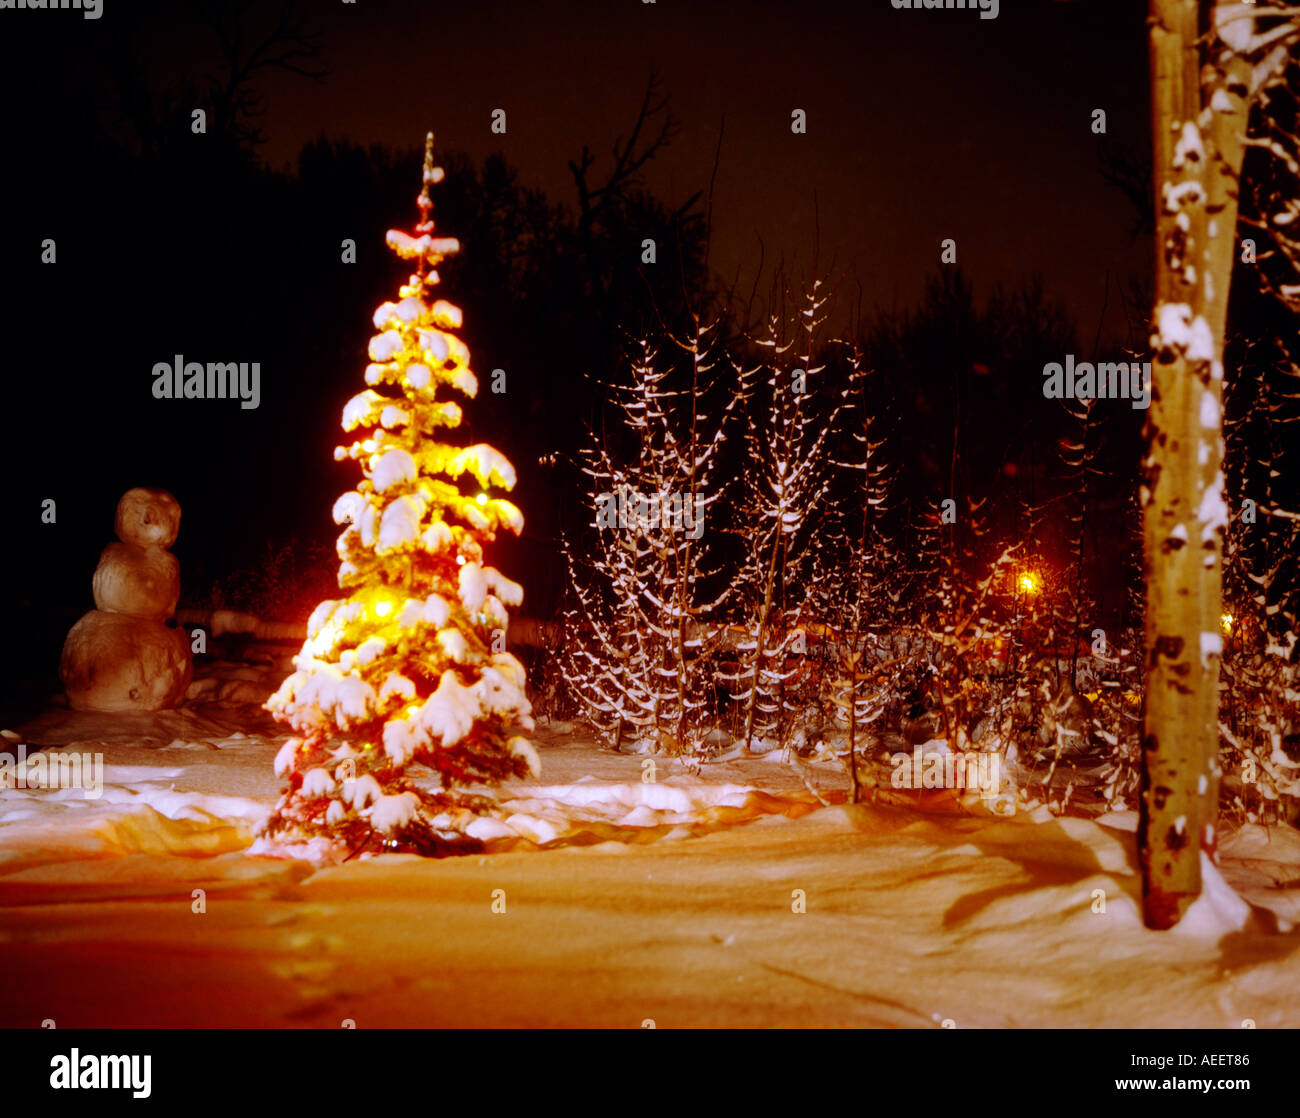 Arbre de Noël lumineux couvert de nouveau la neige dans une scène de nuit avec un bonhomme de neige en arrière-plan Banque D'Images